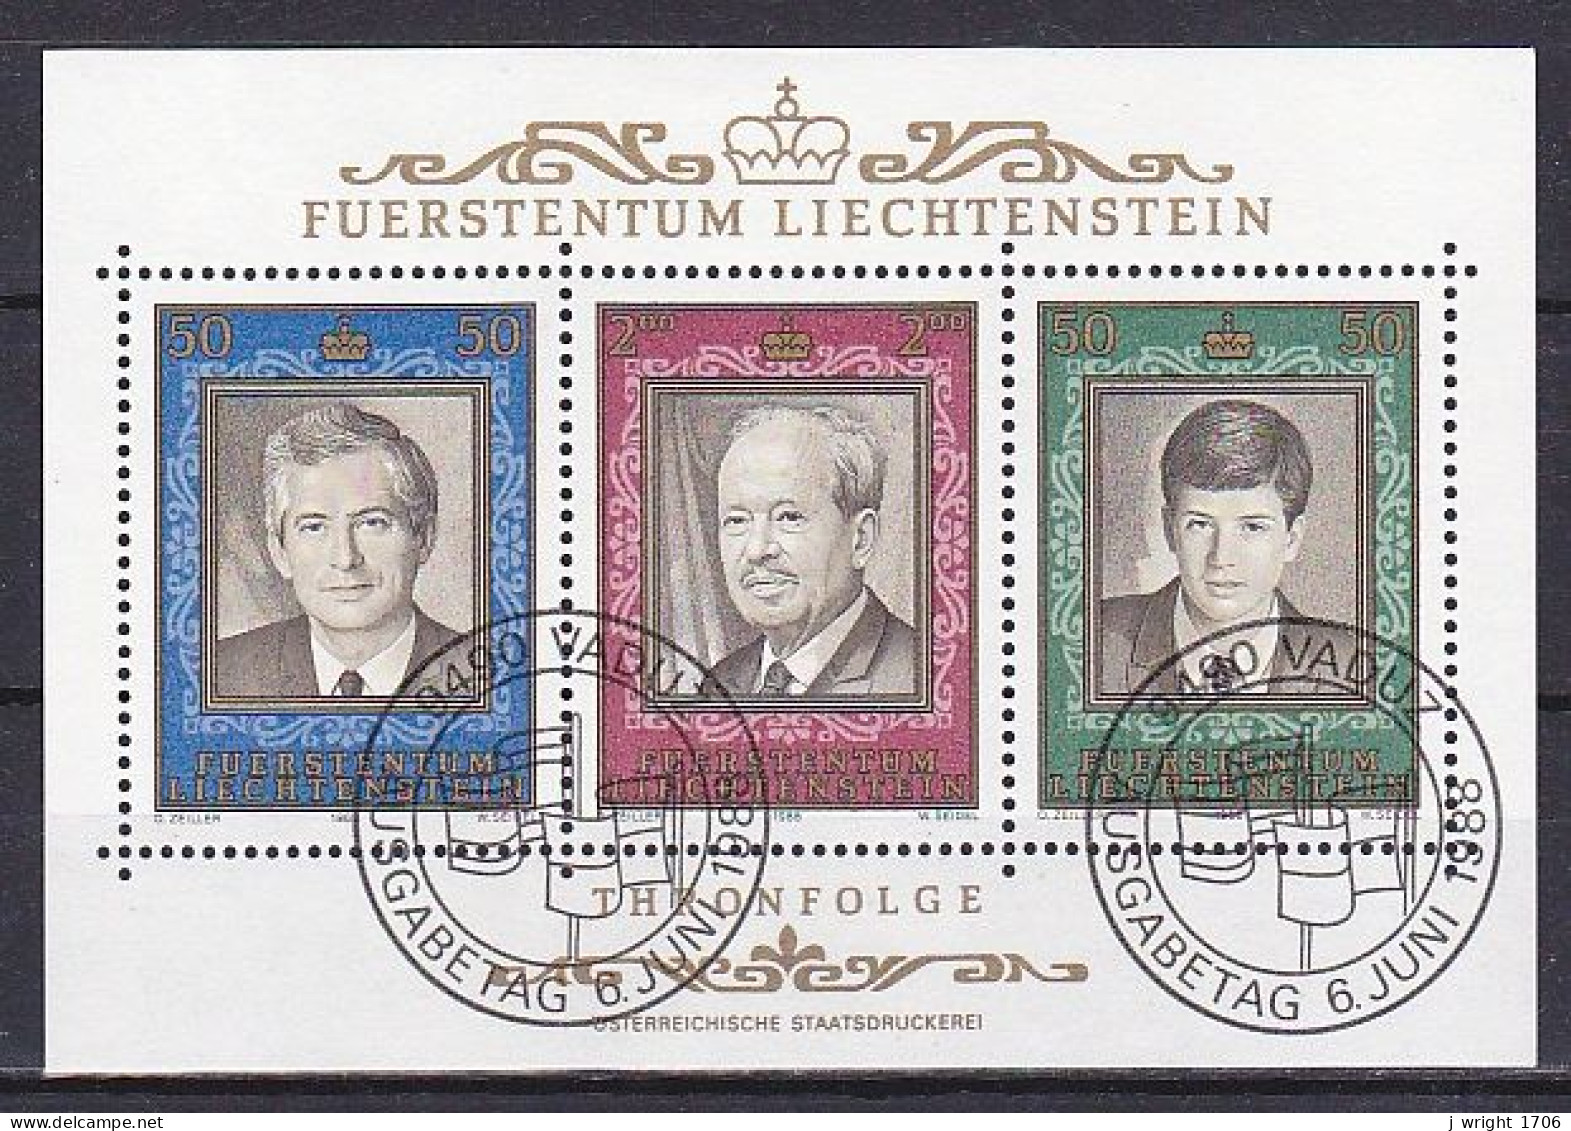 Liechtenstein, 1988, Prince Franz Joseph II Reign 50th Anniv, Block, CTO - Blocs & Feuillets